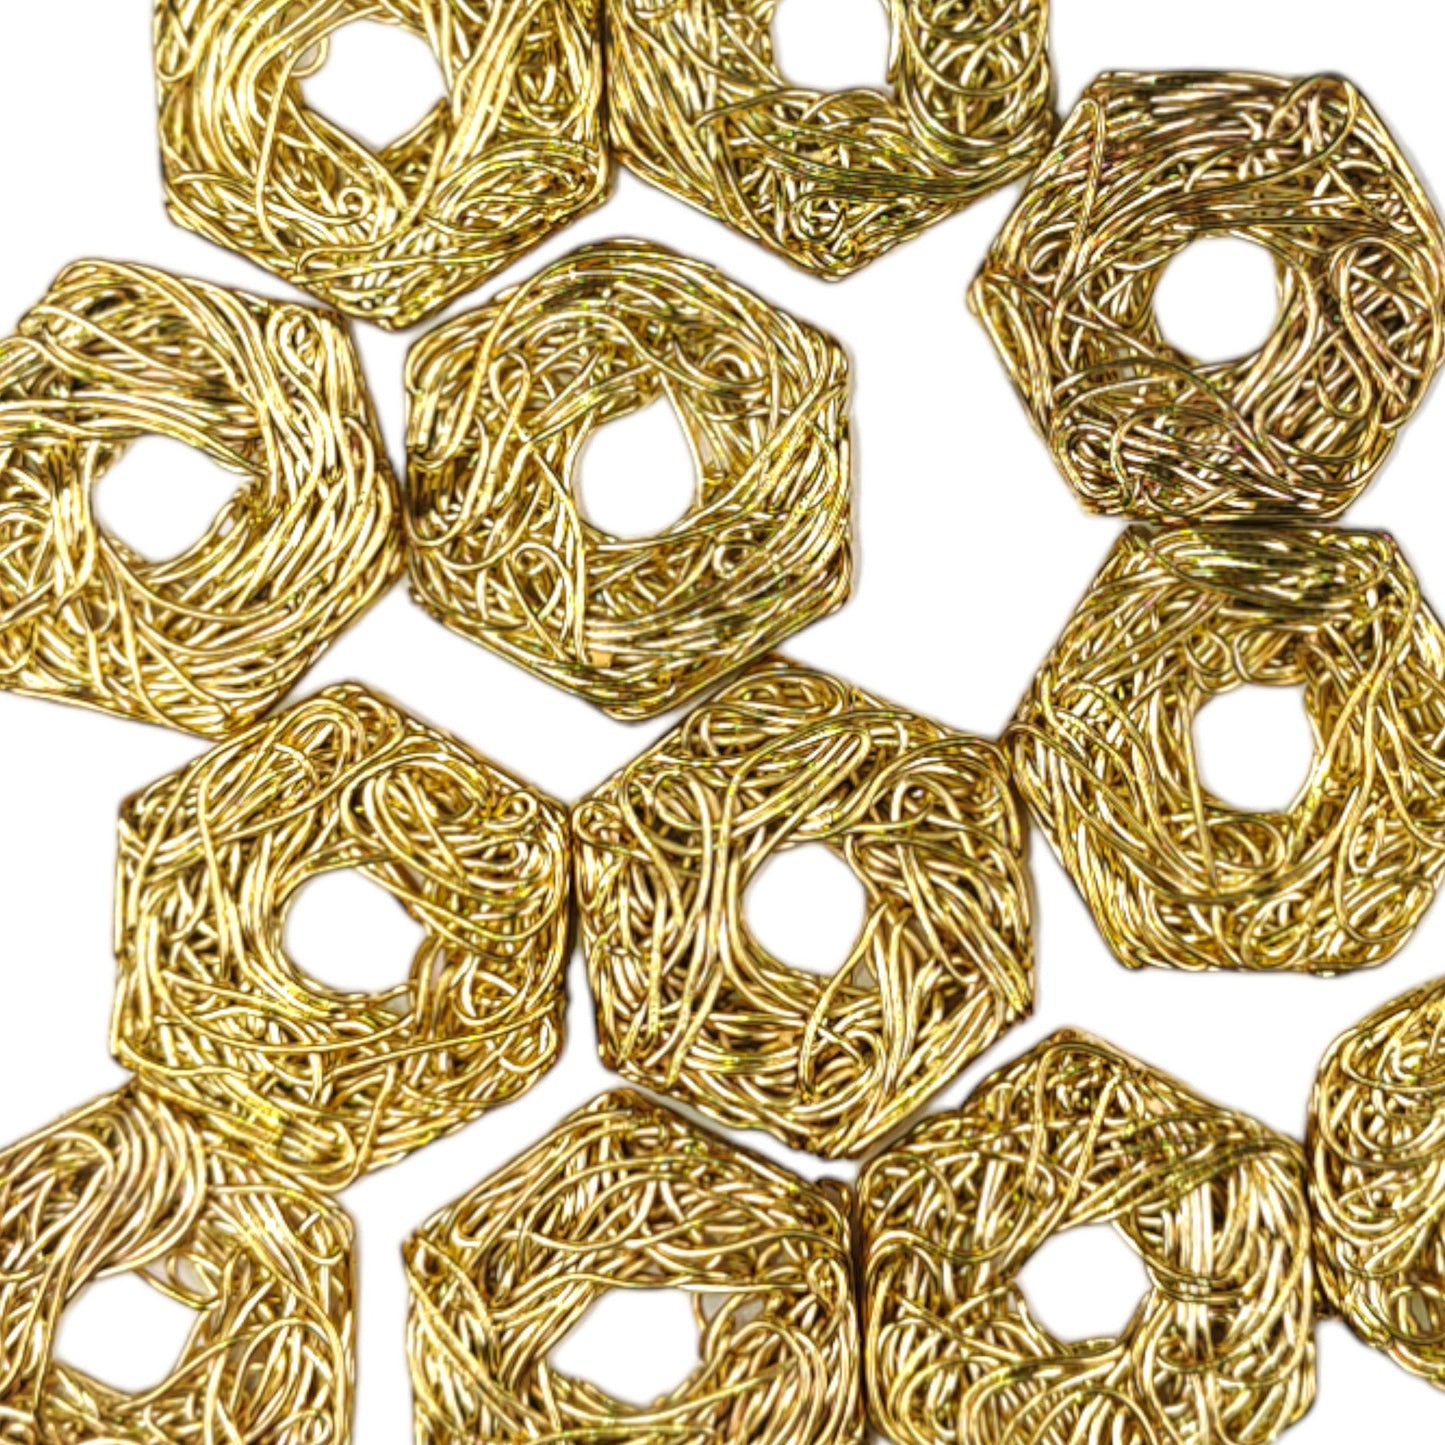 Golden Hexagonal Shape Metal Motif for Craft or Decor - 11445